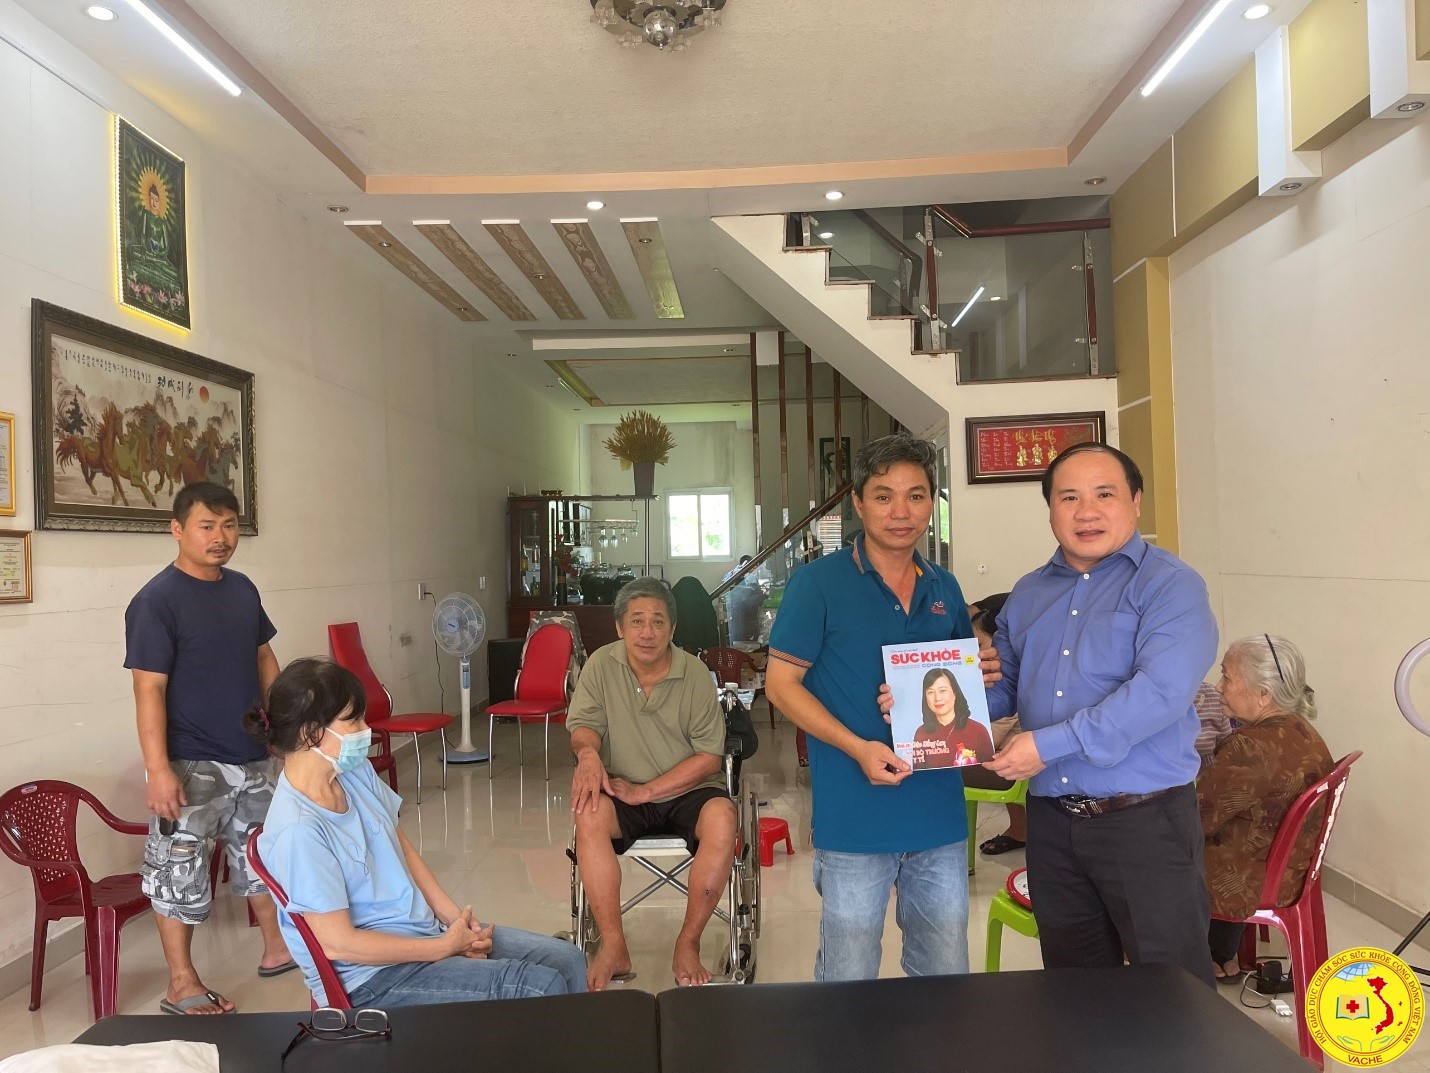 Ông Phạm Đình Vương, Trưởng Văn phòng Đại diện Trung Ương Hội GDCSSKCĐ Việt Nam tại TP. HCM trao tặng Tạp Chí Sức Khoẻ Cộng Đồng số ra tháng 11/2022 cho Lương Y Phan Nhật Anh tại Ninh Thuận.